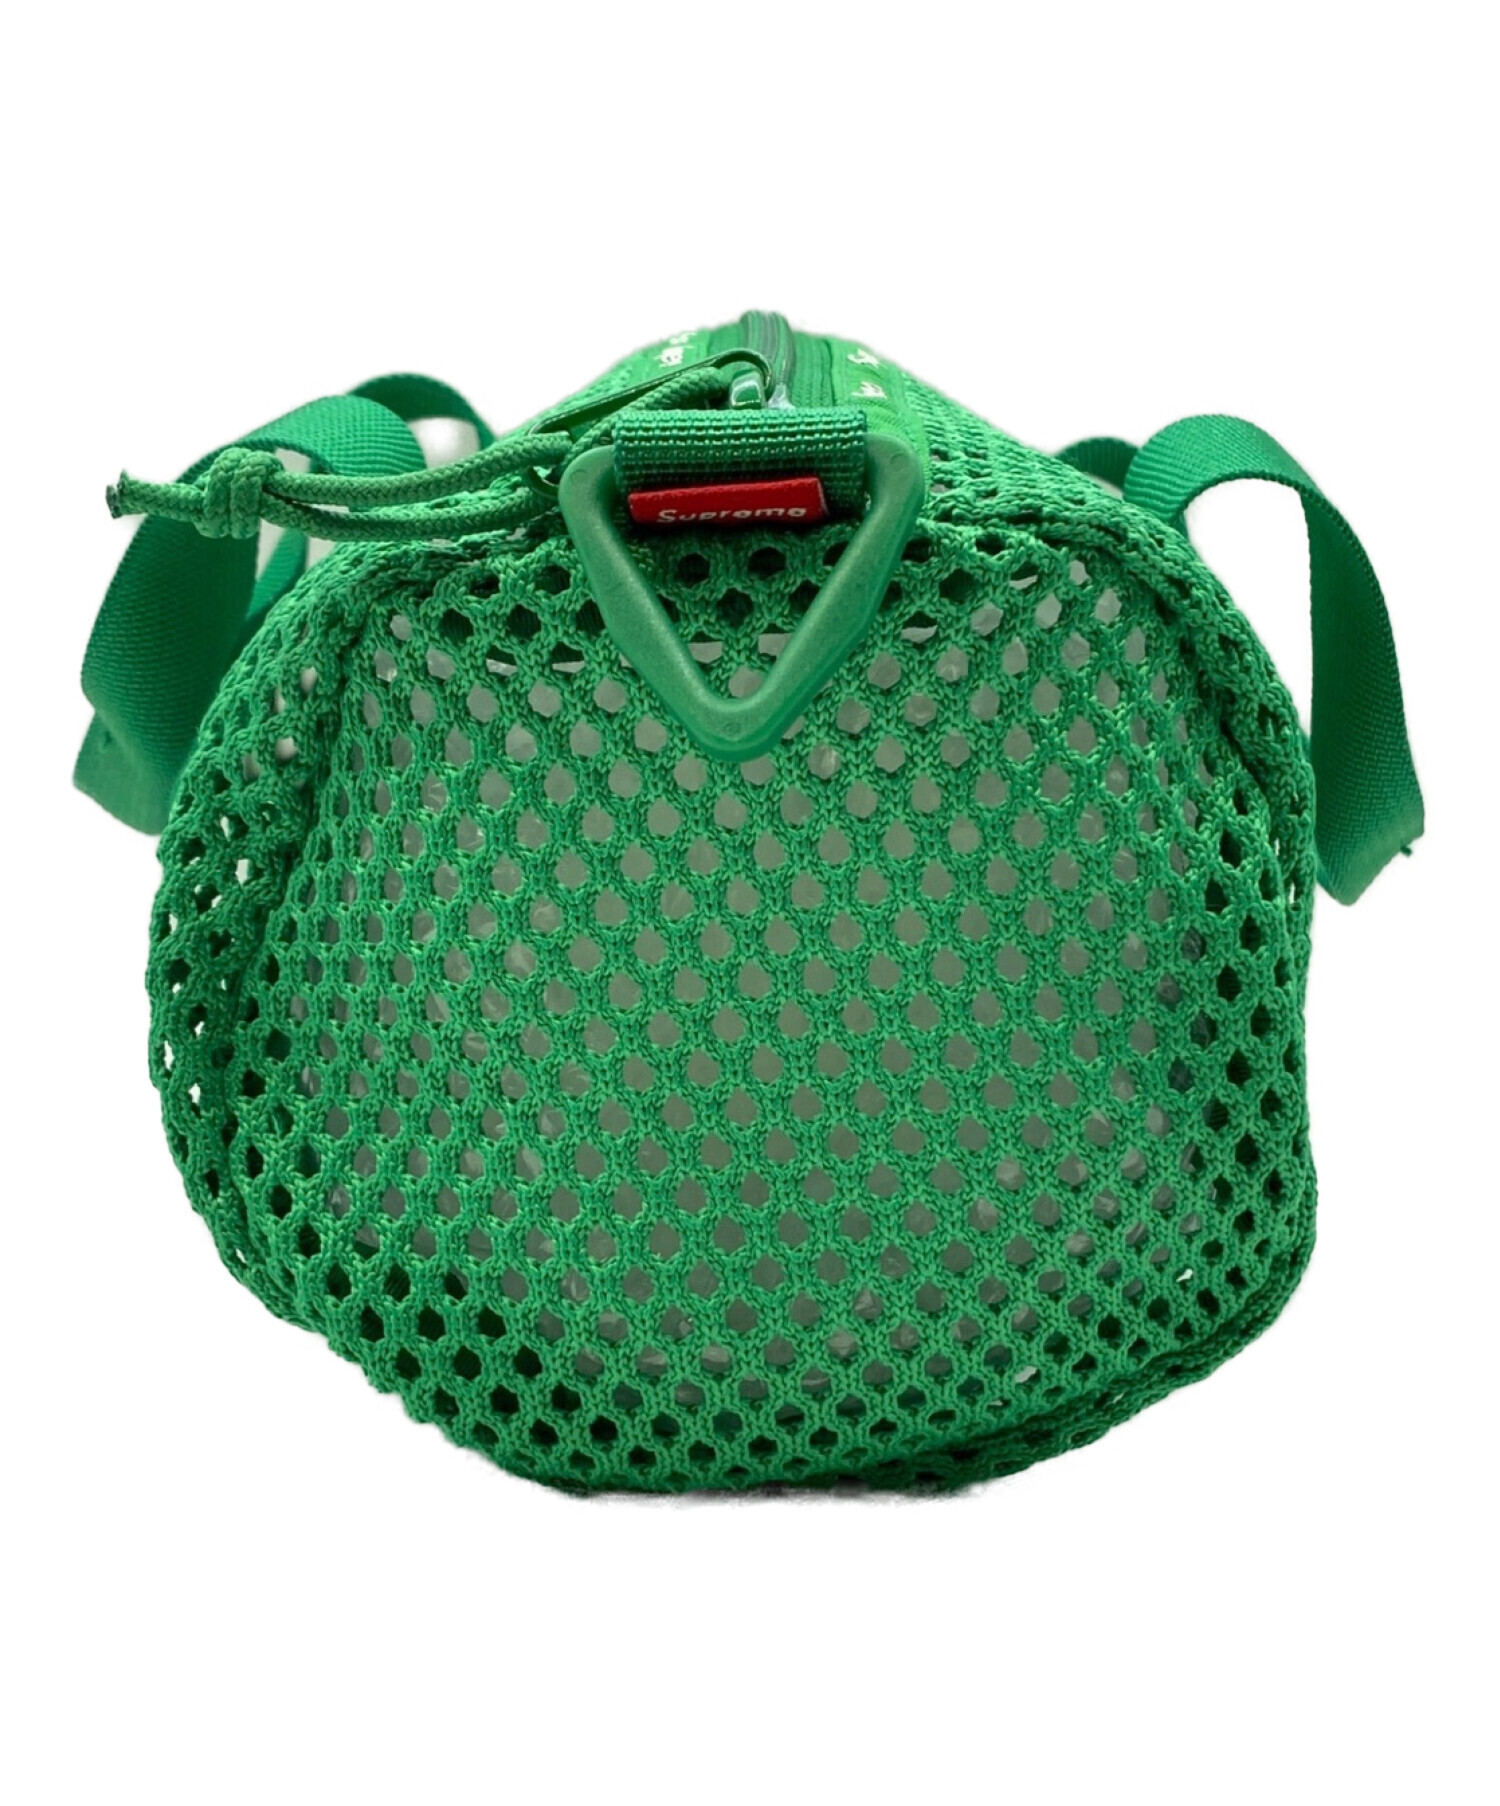 SUPREME (シュプリーム) Mesh Mini Duffle Bag グリーン サイズ:-